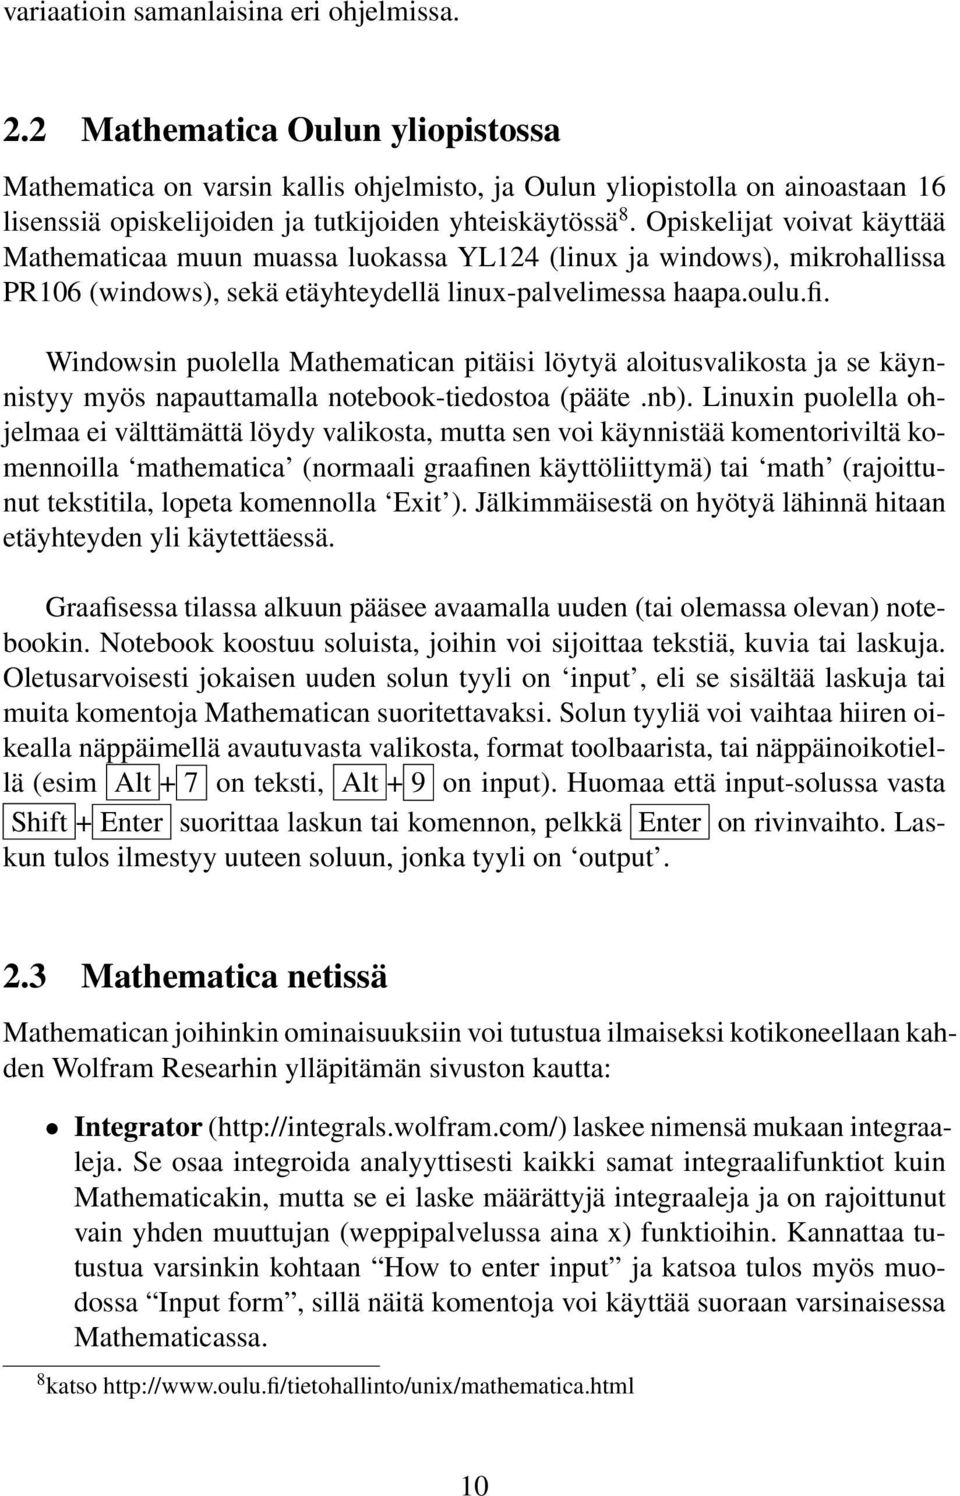 Opiskelijat voivat käyttää Mathematicaa muun muassa luokassa YL124 (linux ja windows), mikrohallissa PR106 (windows), sekä etäyhteydellä linux-palvelimessa haapa.oulu.fi.